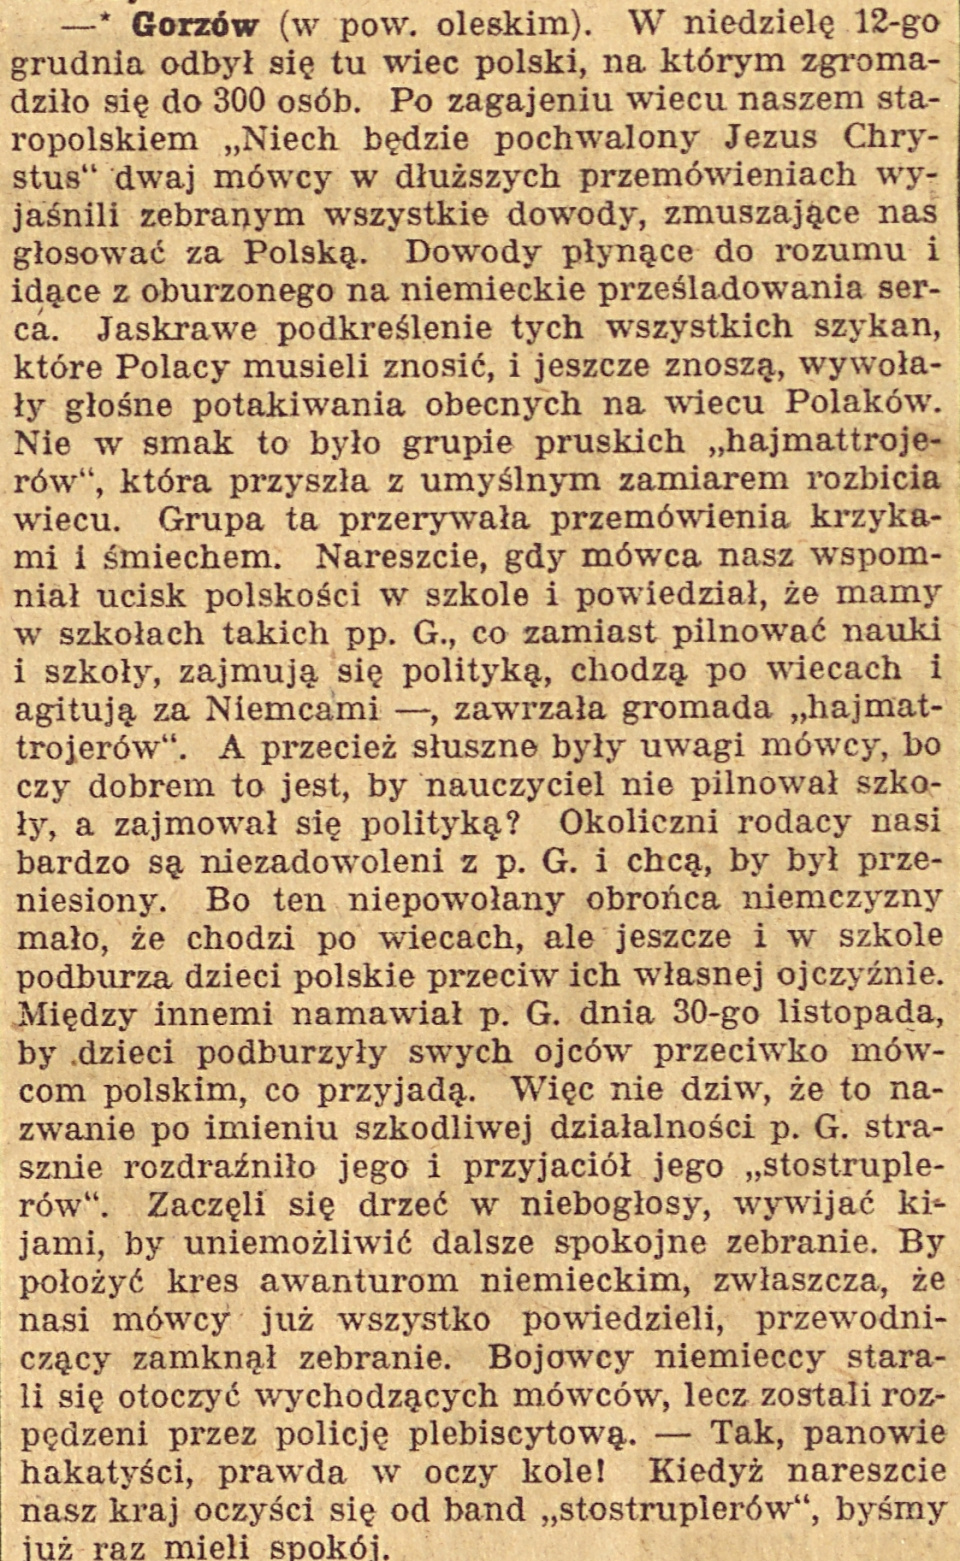 Gorzów Śląski, Gazeta Opolska (15.12.1920)